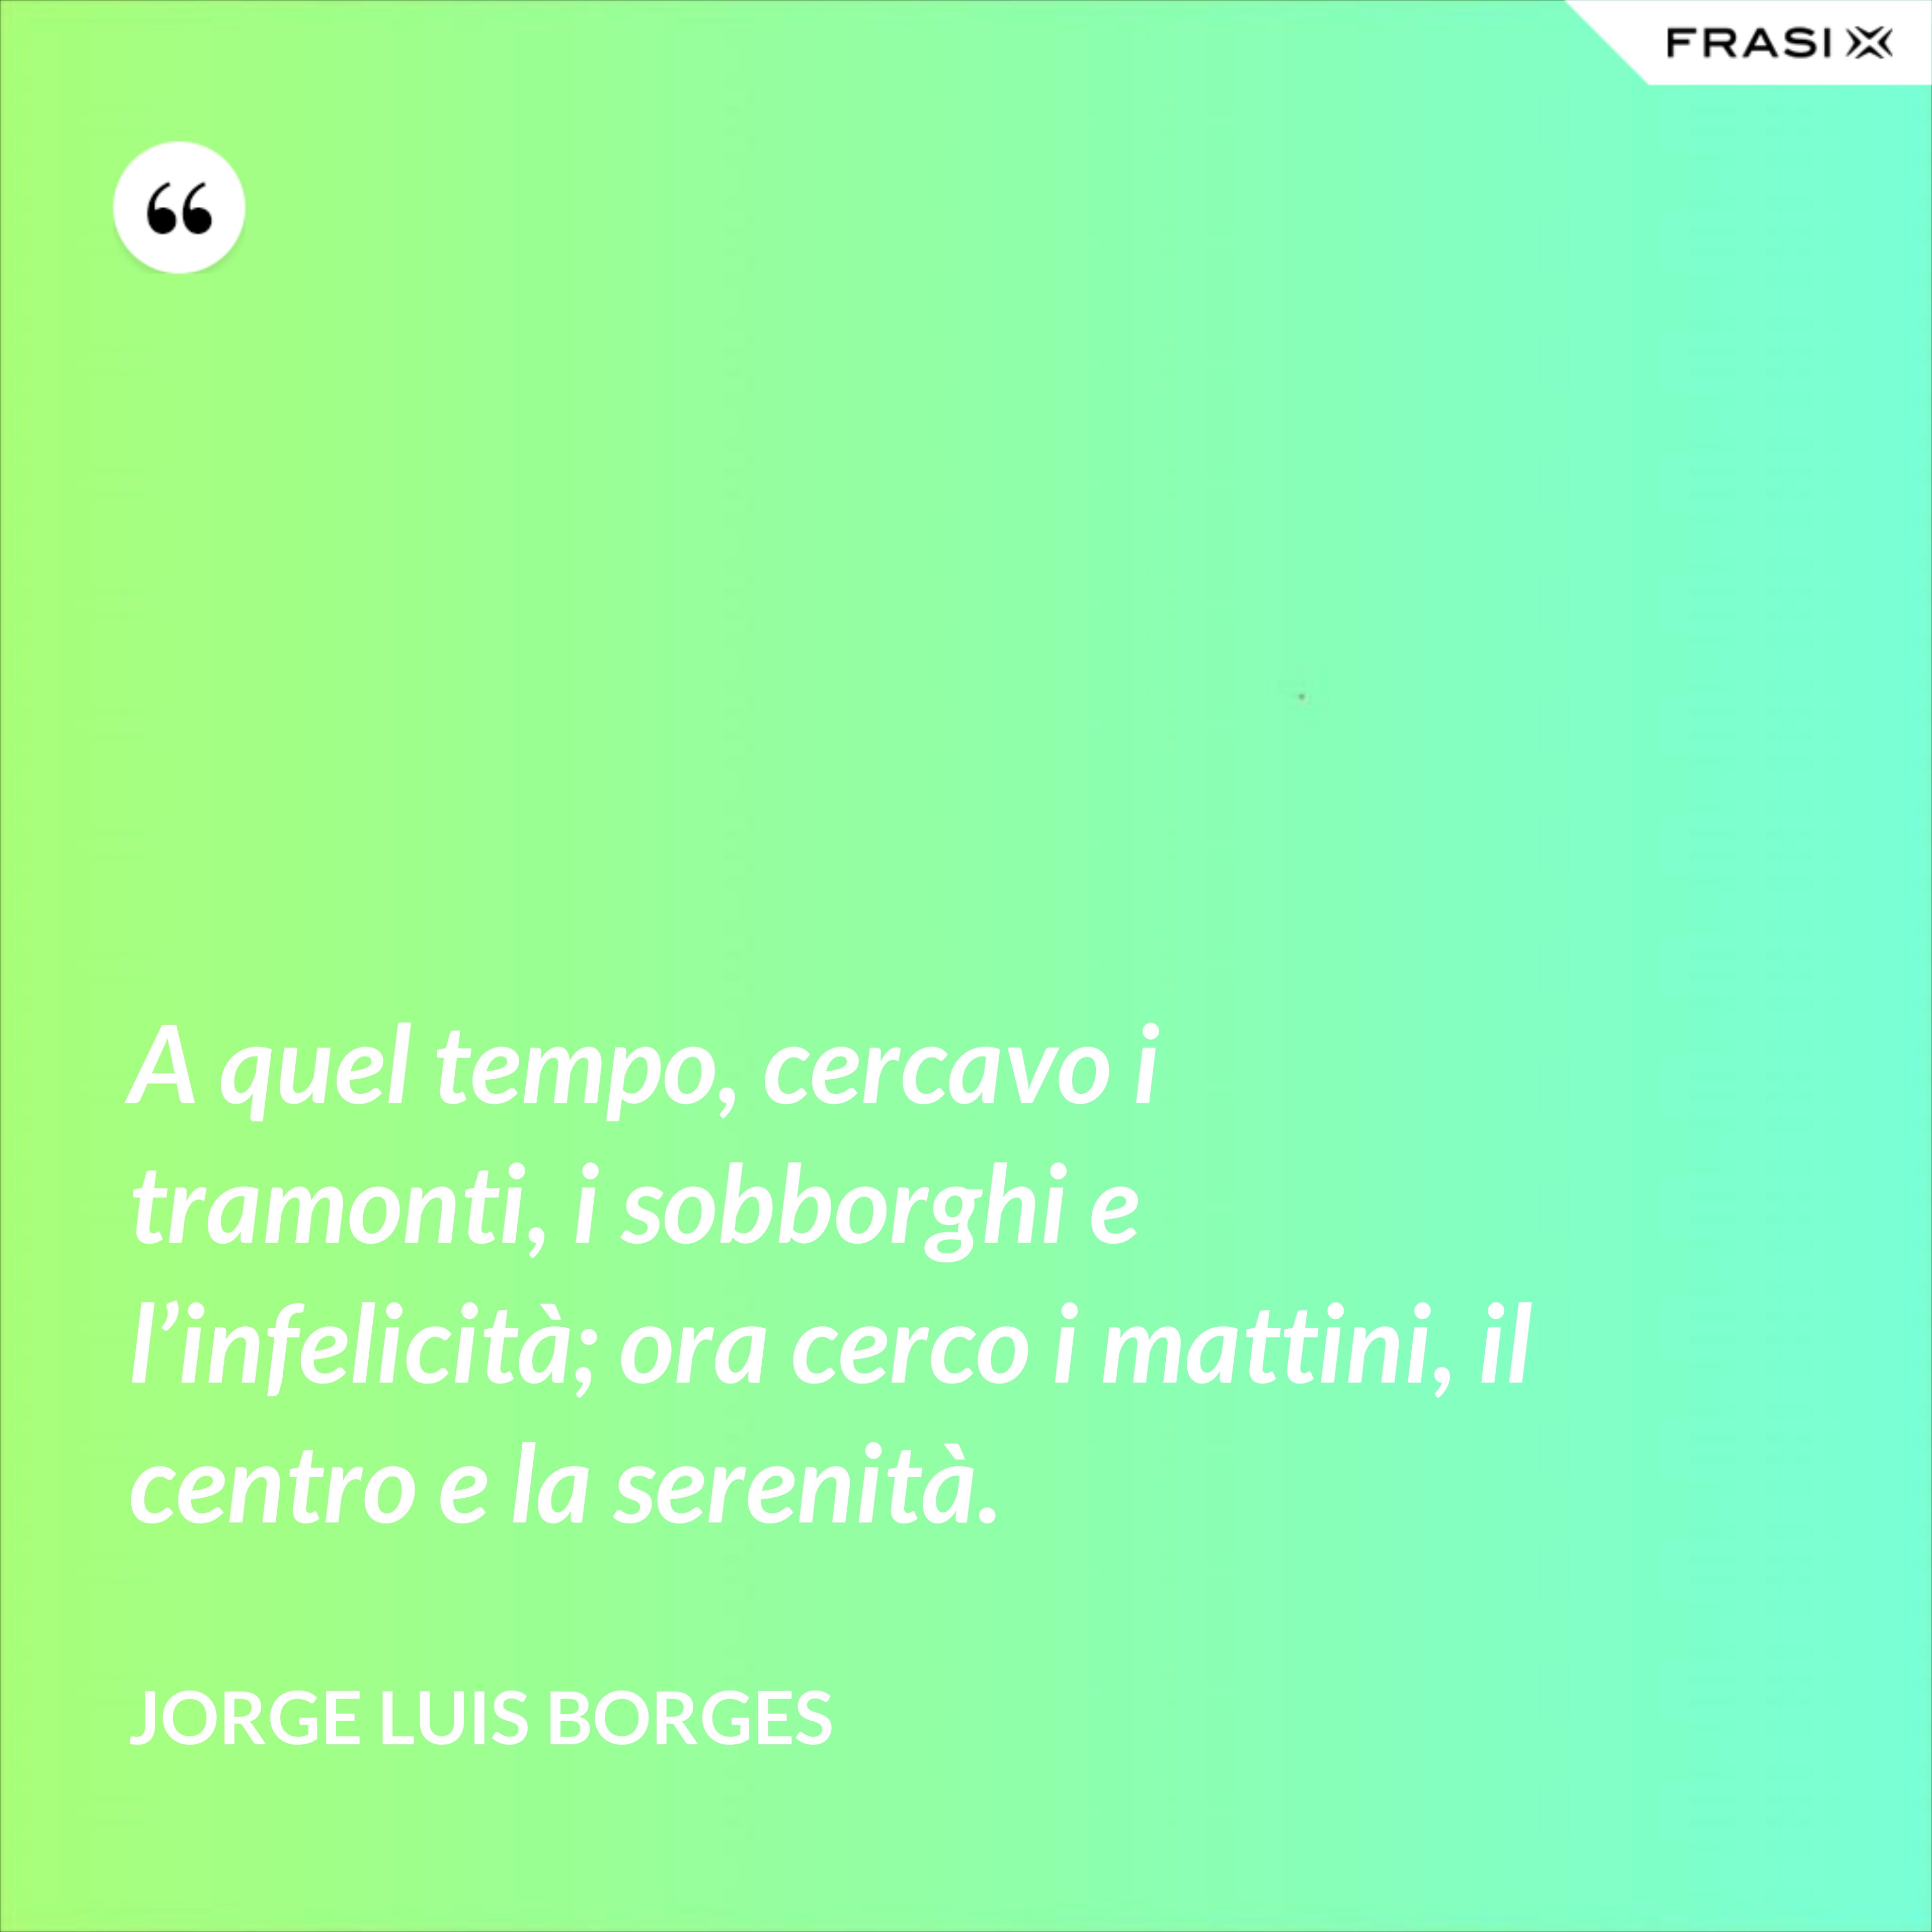 A quel tempo, cercavo i tramonti, i sobborghi e l’infelicità; ora cerco i mattini, il centro e la serenità. - Jorge Luis Borges